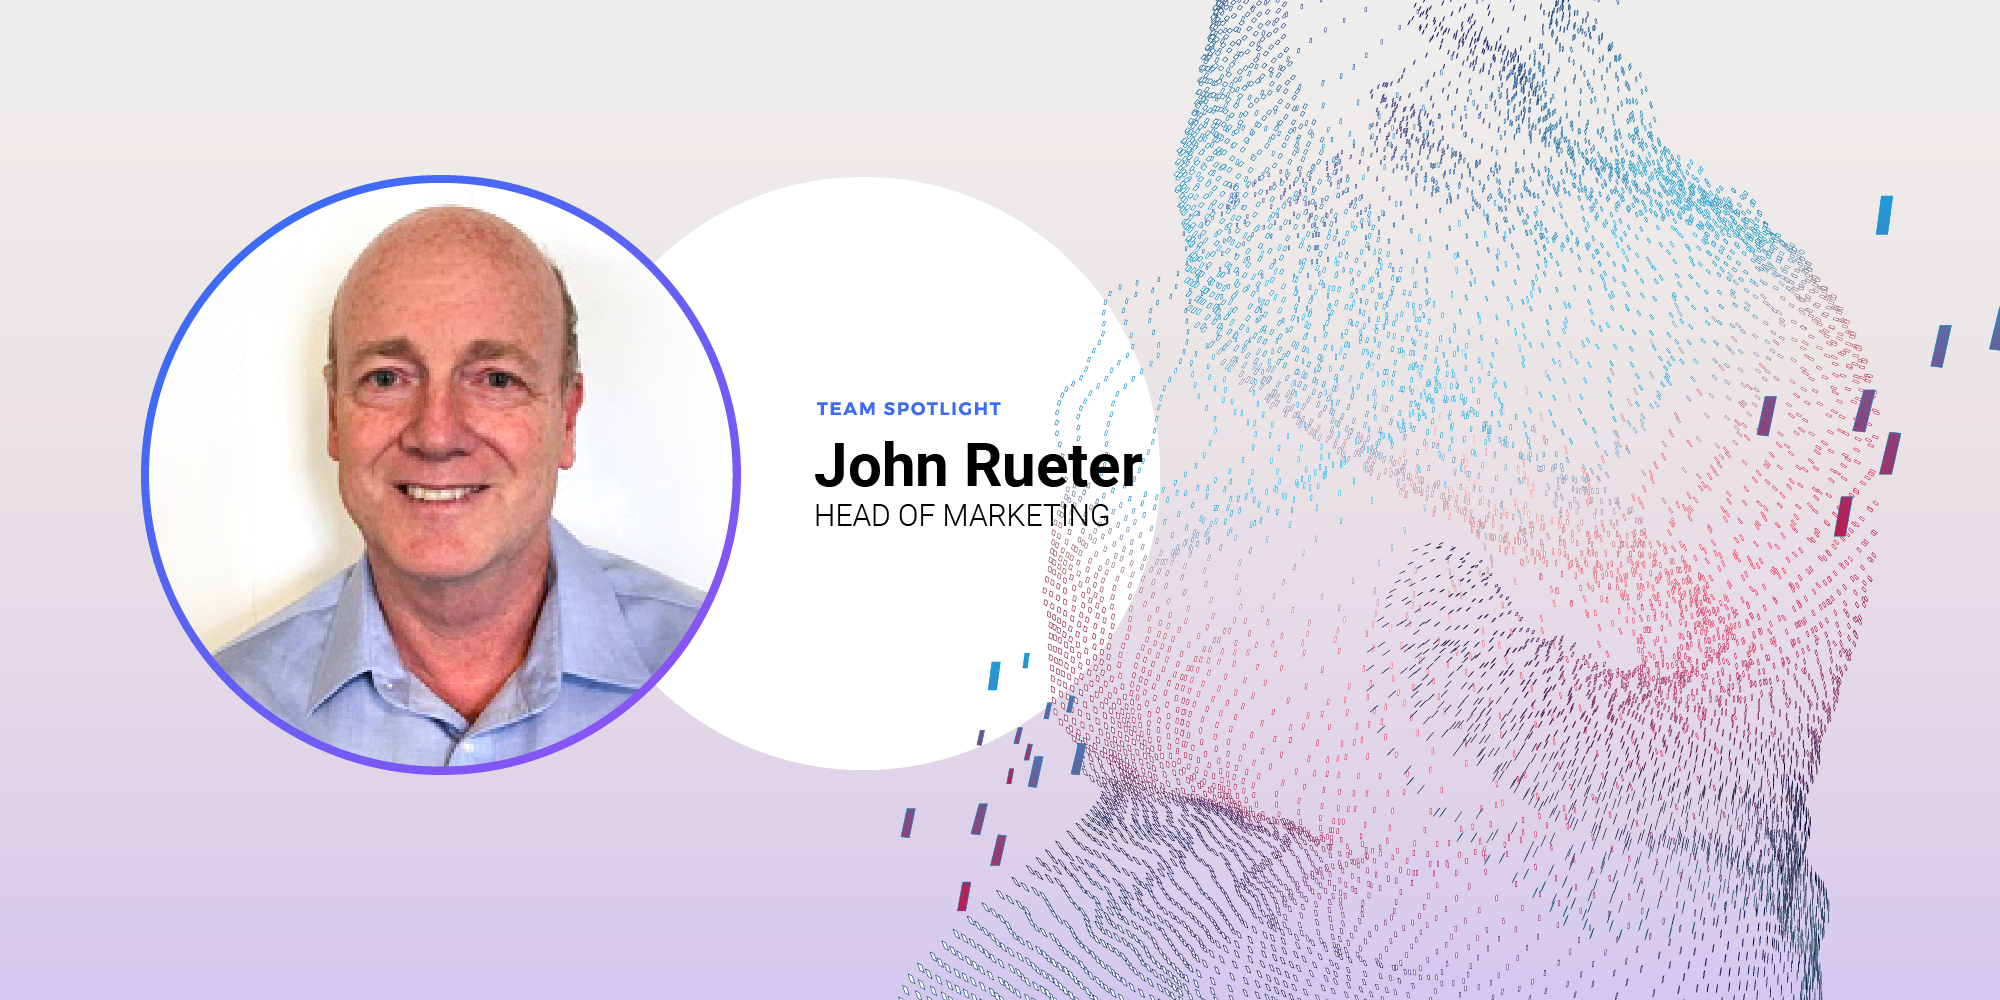 Team Spotlight - John Rueter